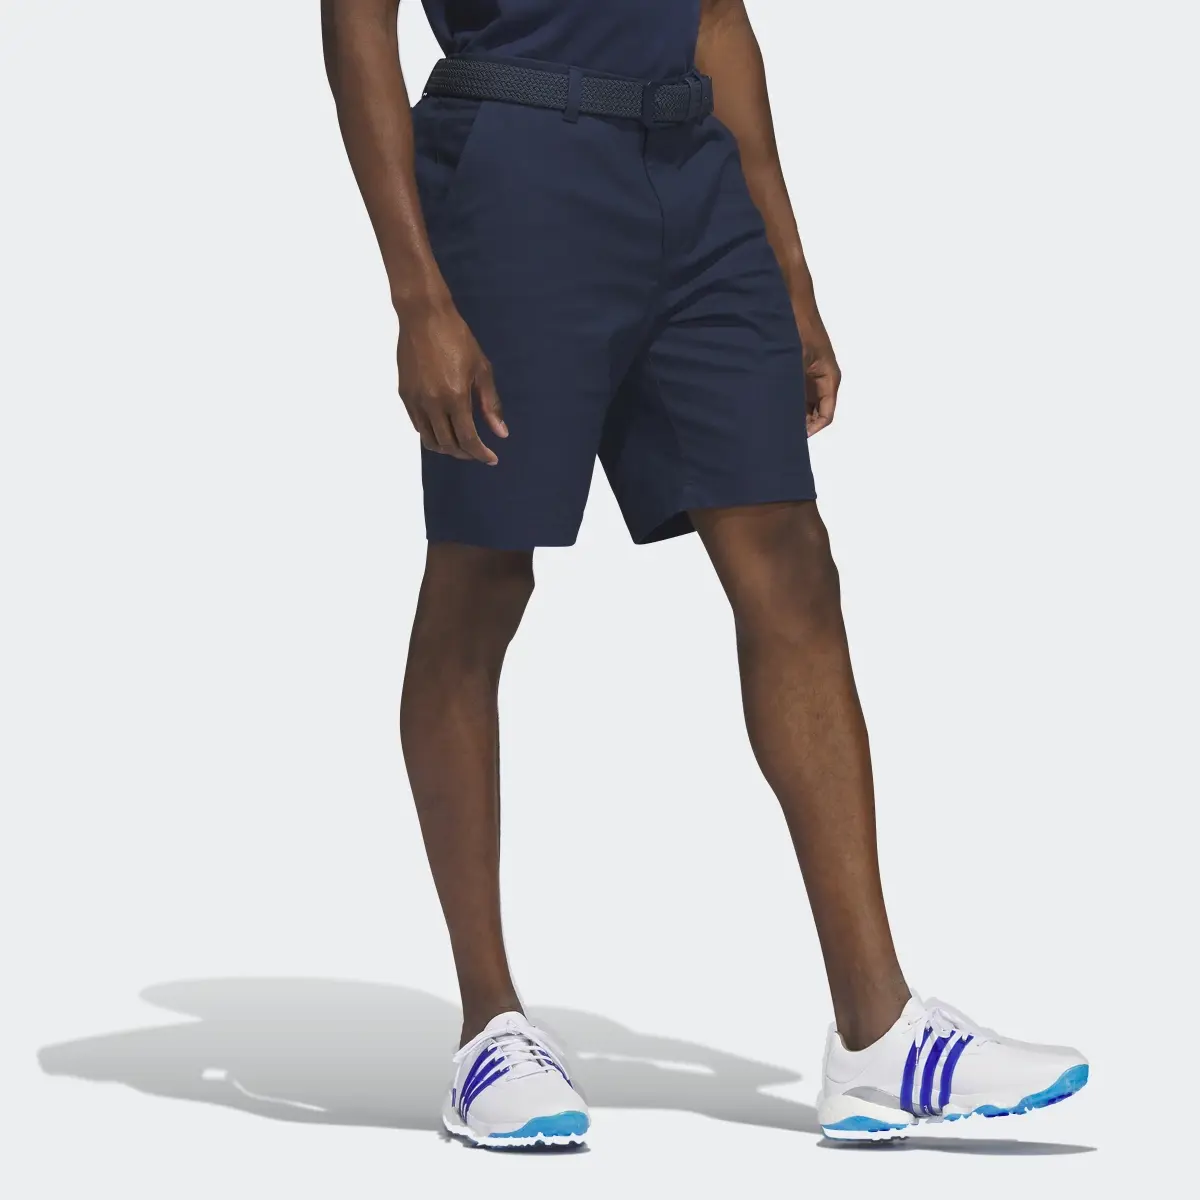 Adidas Go-To 9-Inch Golf Shorts. 3